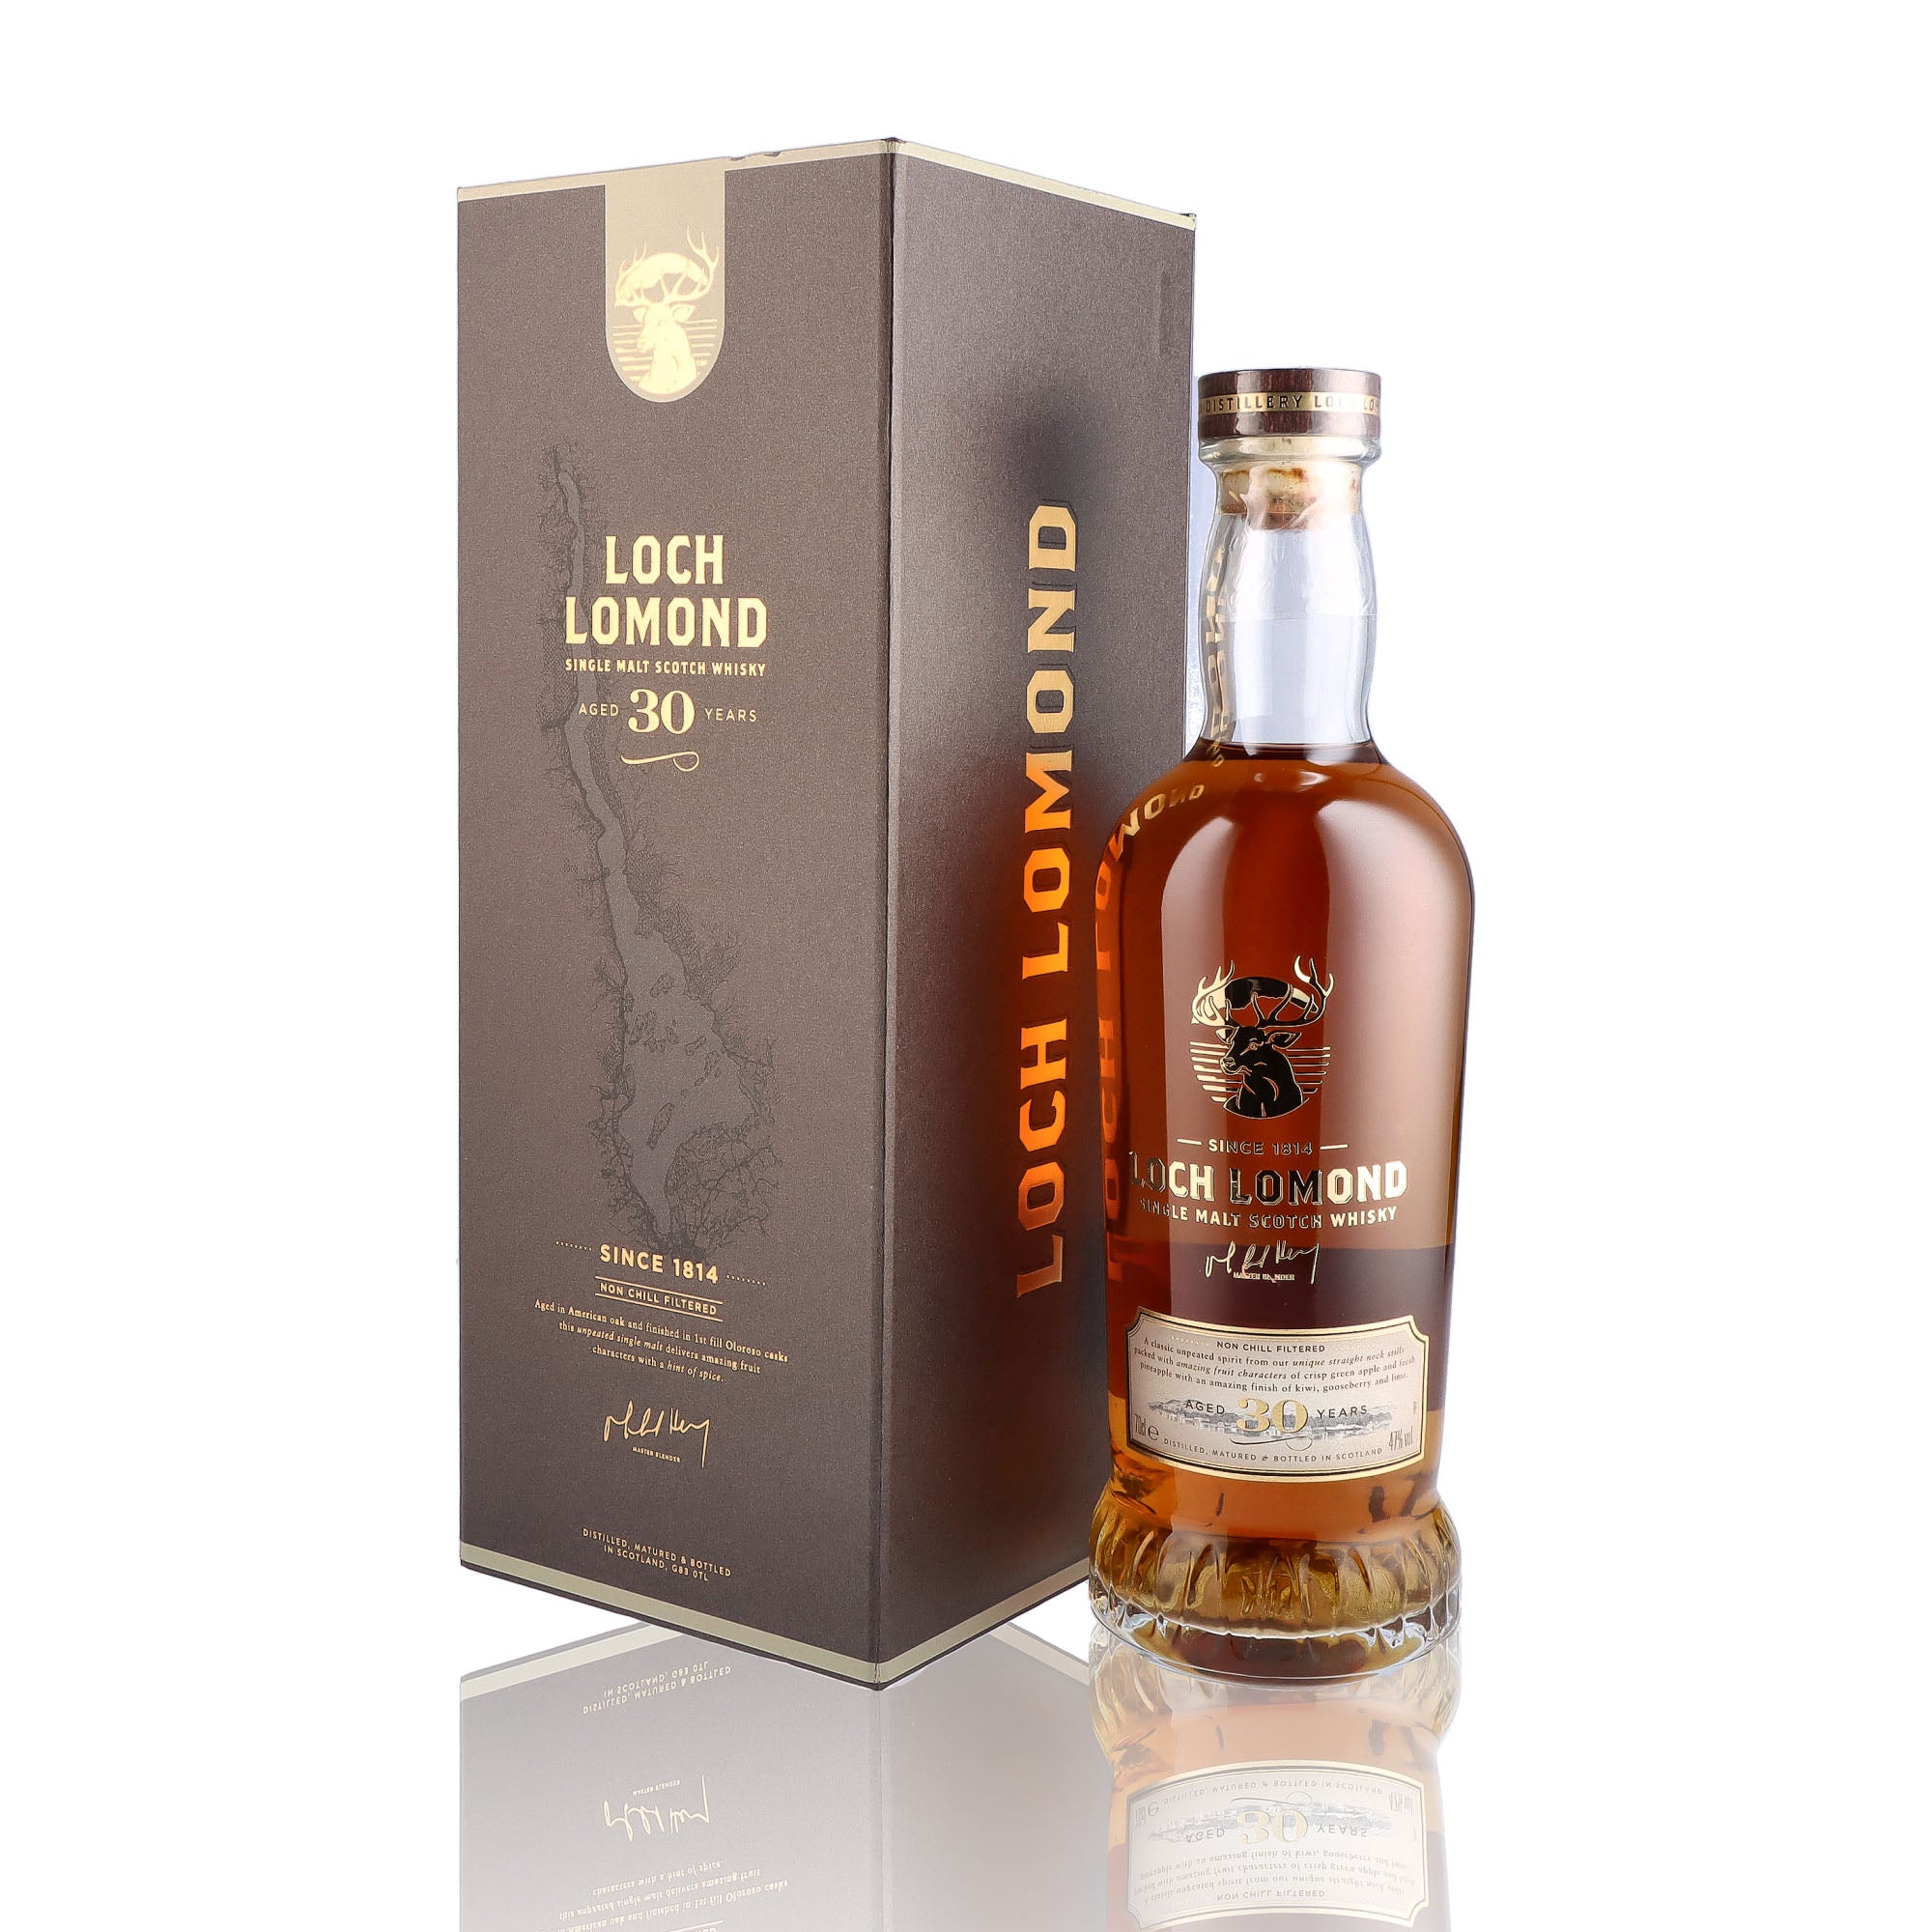 Une bouteille de Scotch Whisky Single Malt de la marque Loch Lomond, 30 ans d'âge.